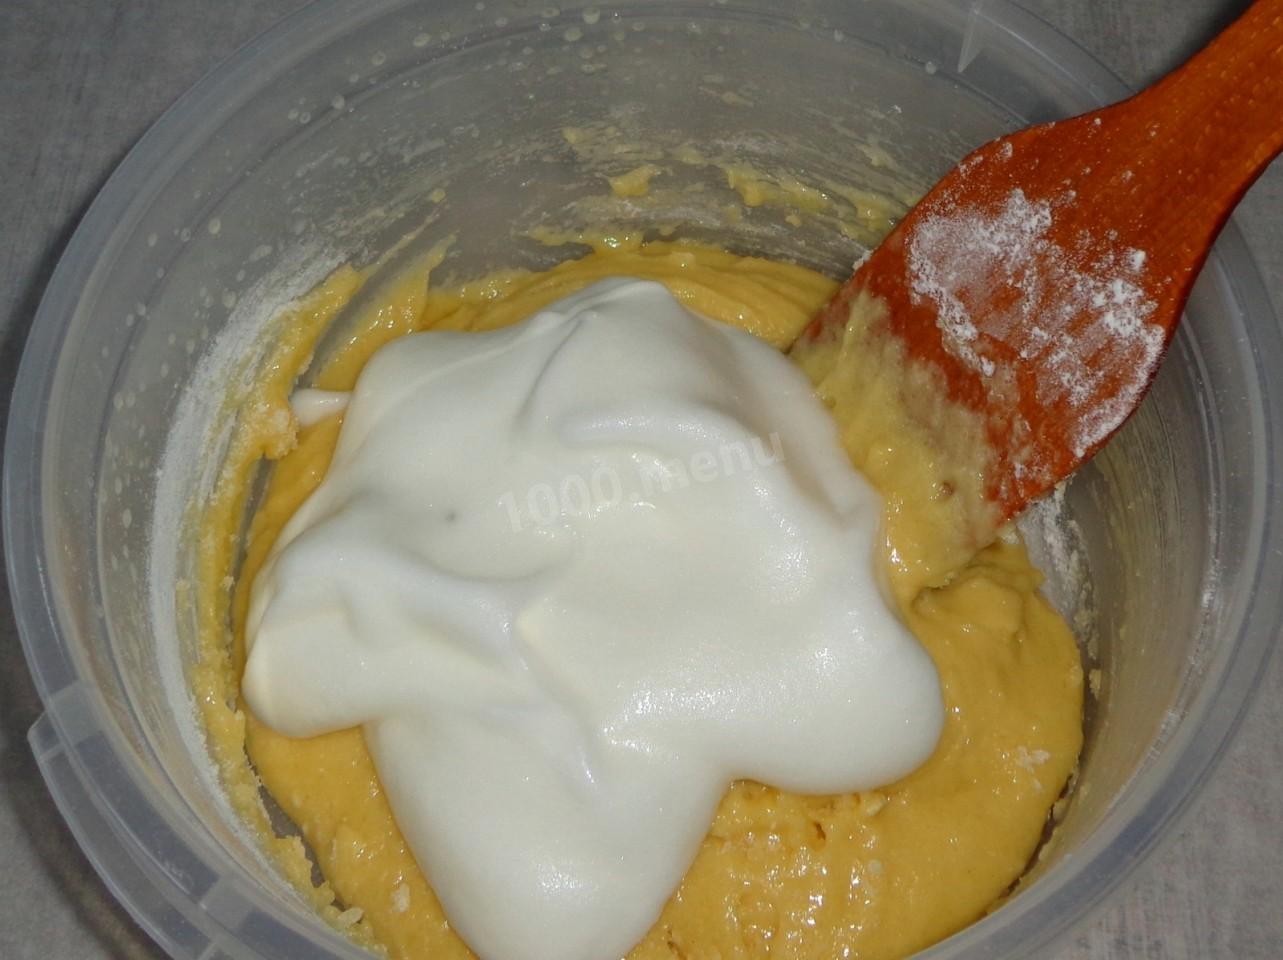 Бисквит с подсолнечным маслом. Перемешиваем тесто. Бисквит а сверху взбитые белка. Взбитый белок сверху на бисквит и запечь. Вводить взбитые белки в тесто.